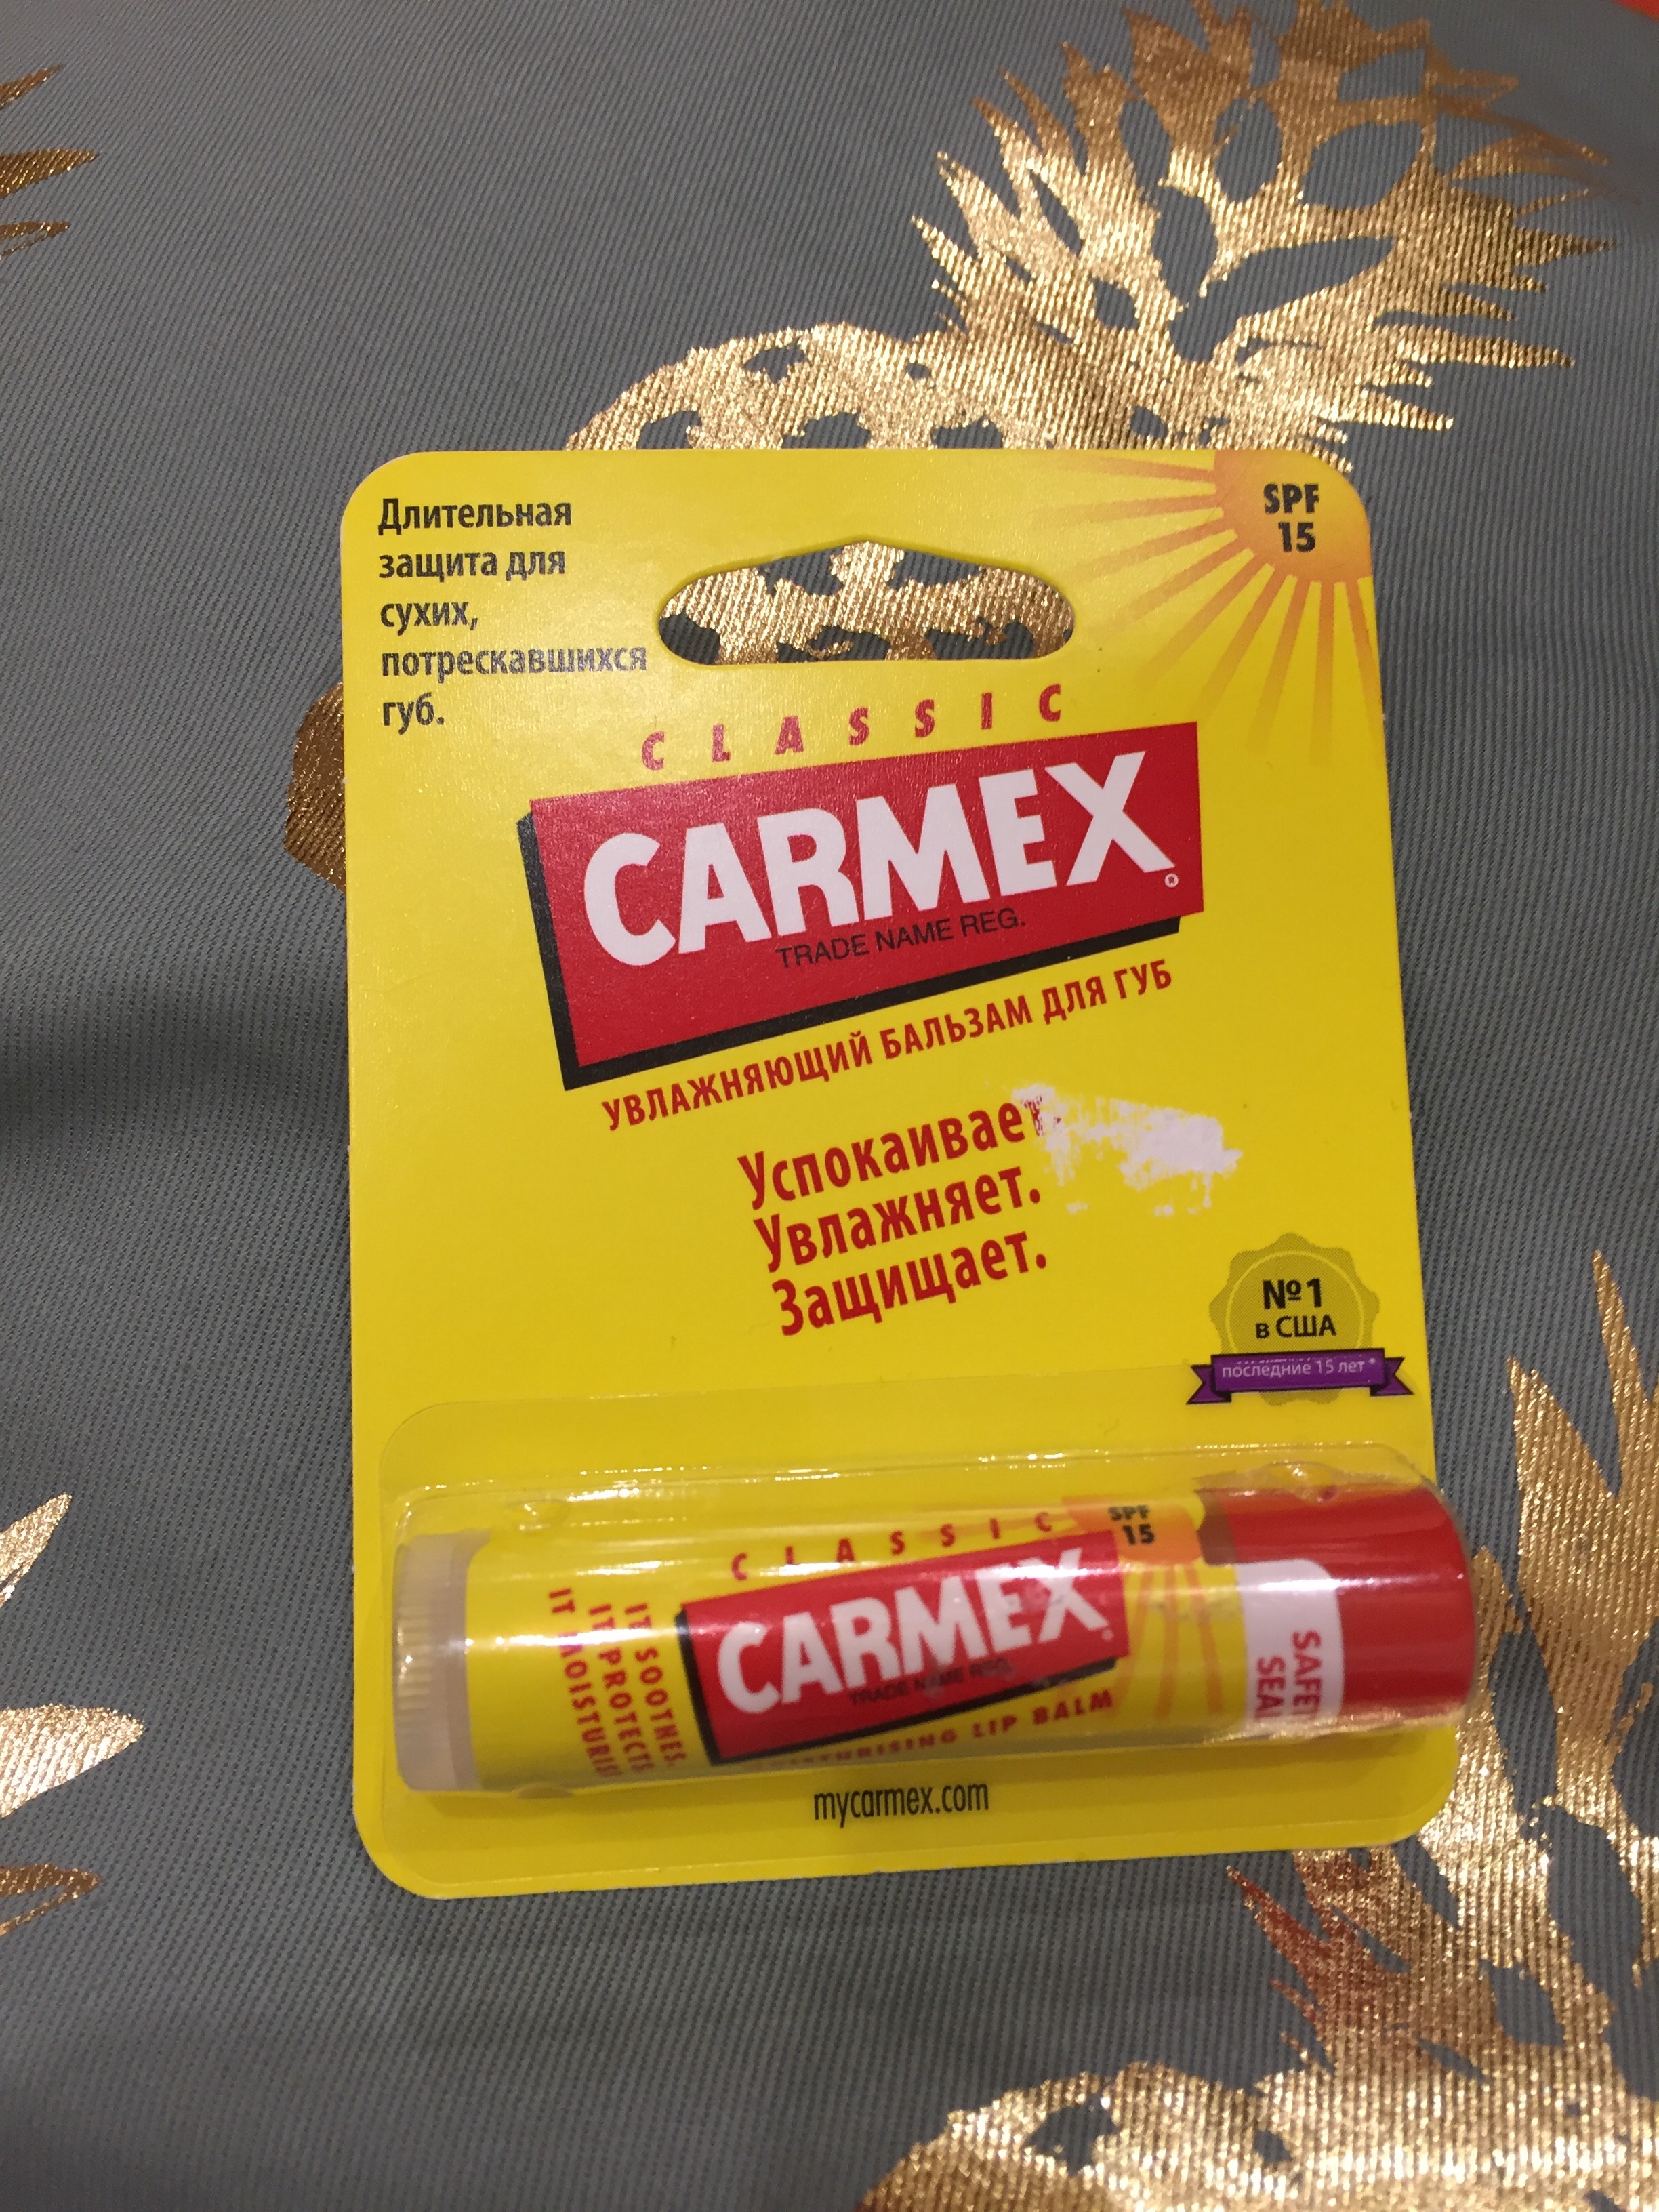 Carmex classic